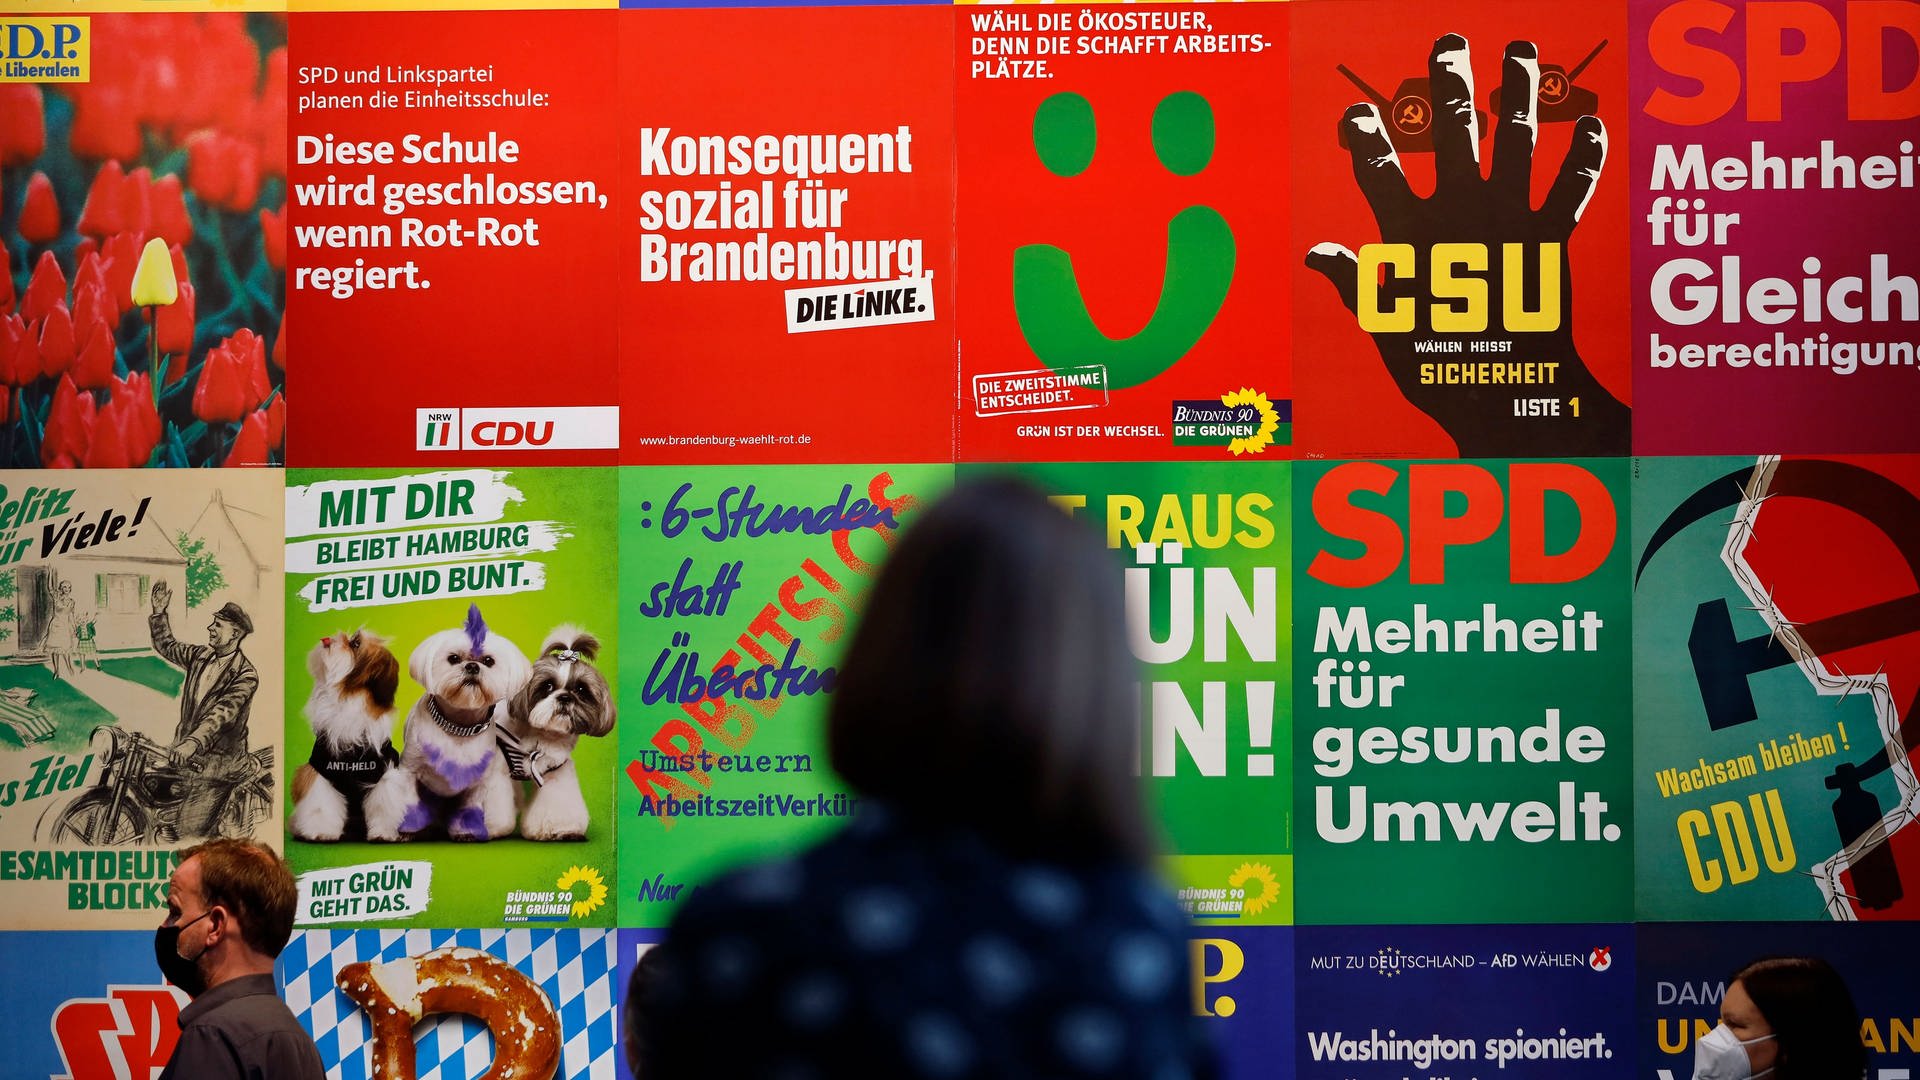 Impressionen von Wahlplakaten und Parteigeschenken beim Pressegespräch zur neuen Ausstellung 'Wähl mich! Parteien plakatieren' im Haus der Geschichte in Bonn. 